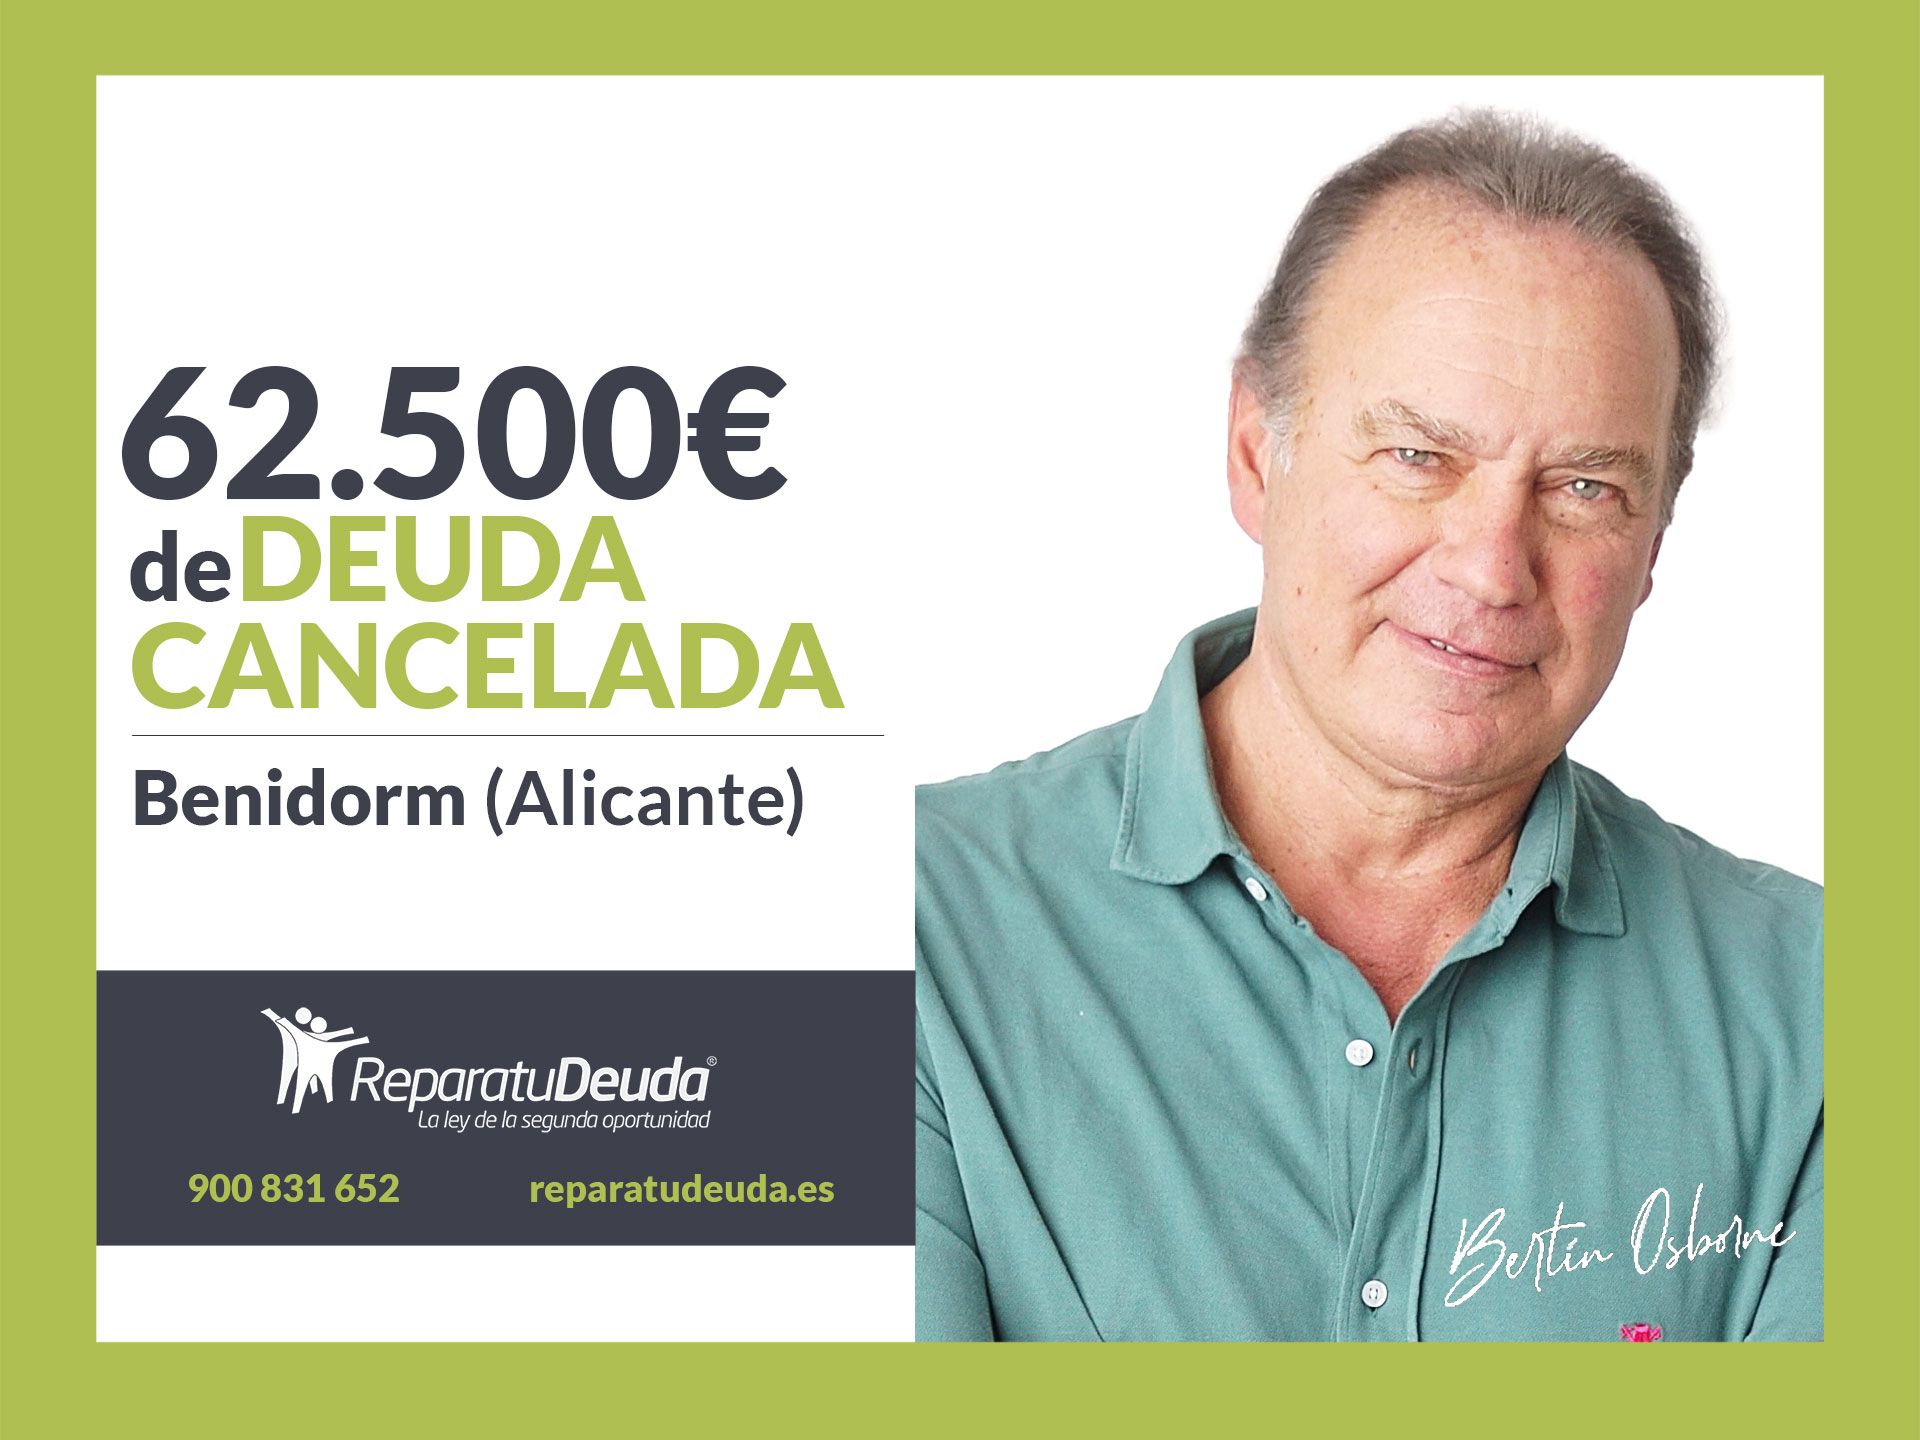 Repara tu Deuda Abogados cancela 62.500 ? en Benidorm (Alicante) con la Ley de Segunda Oportunidad